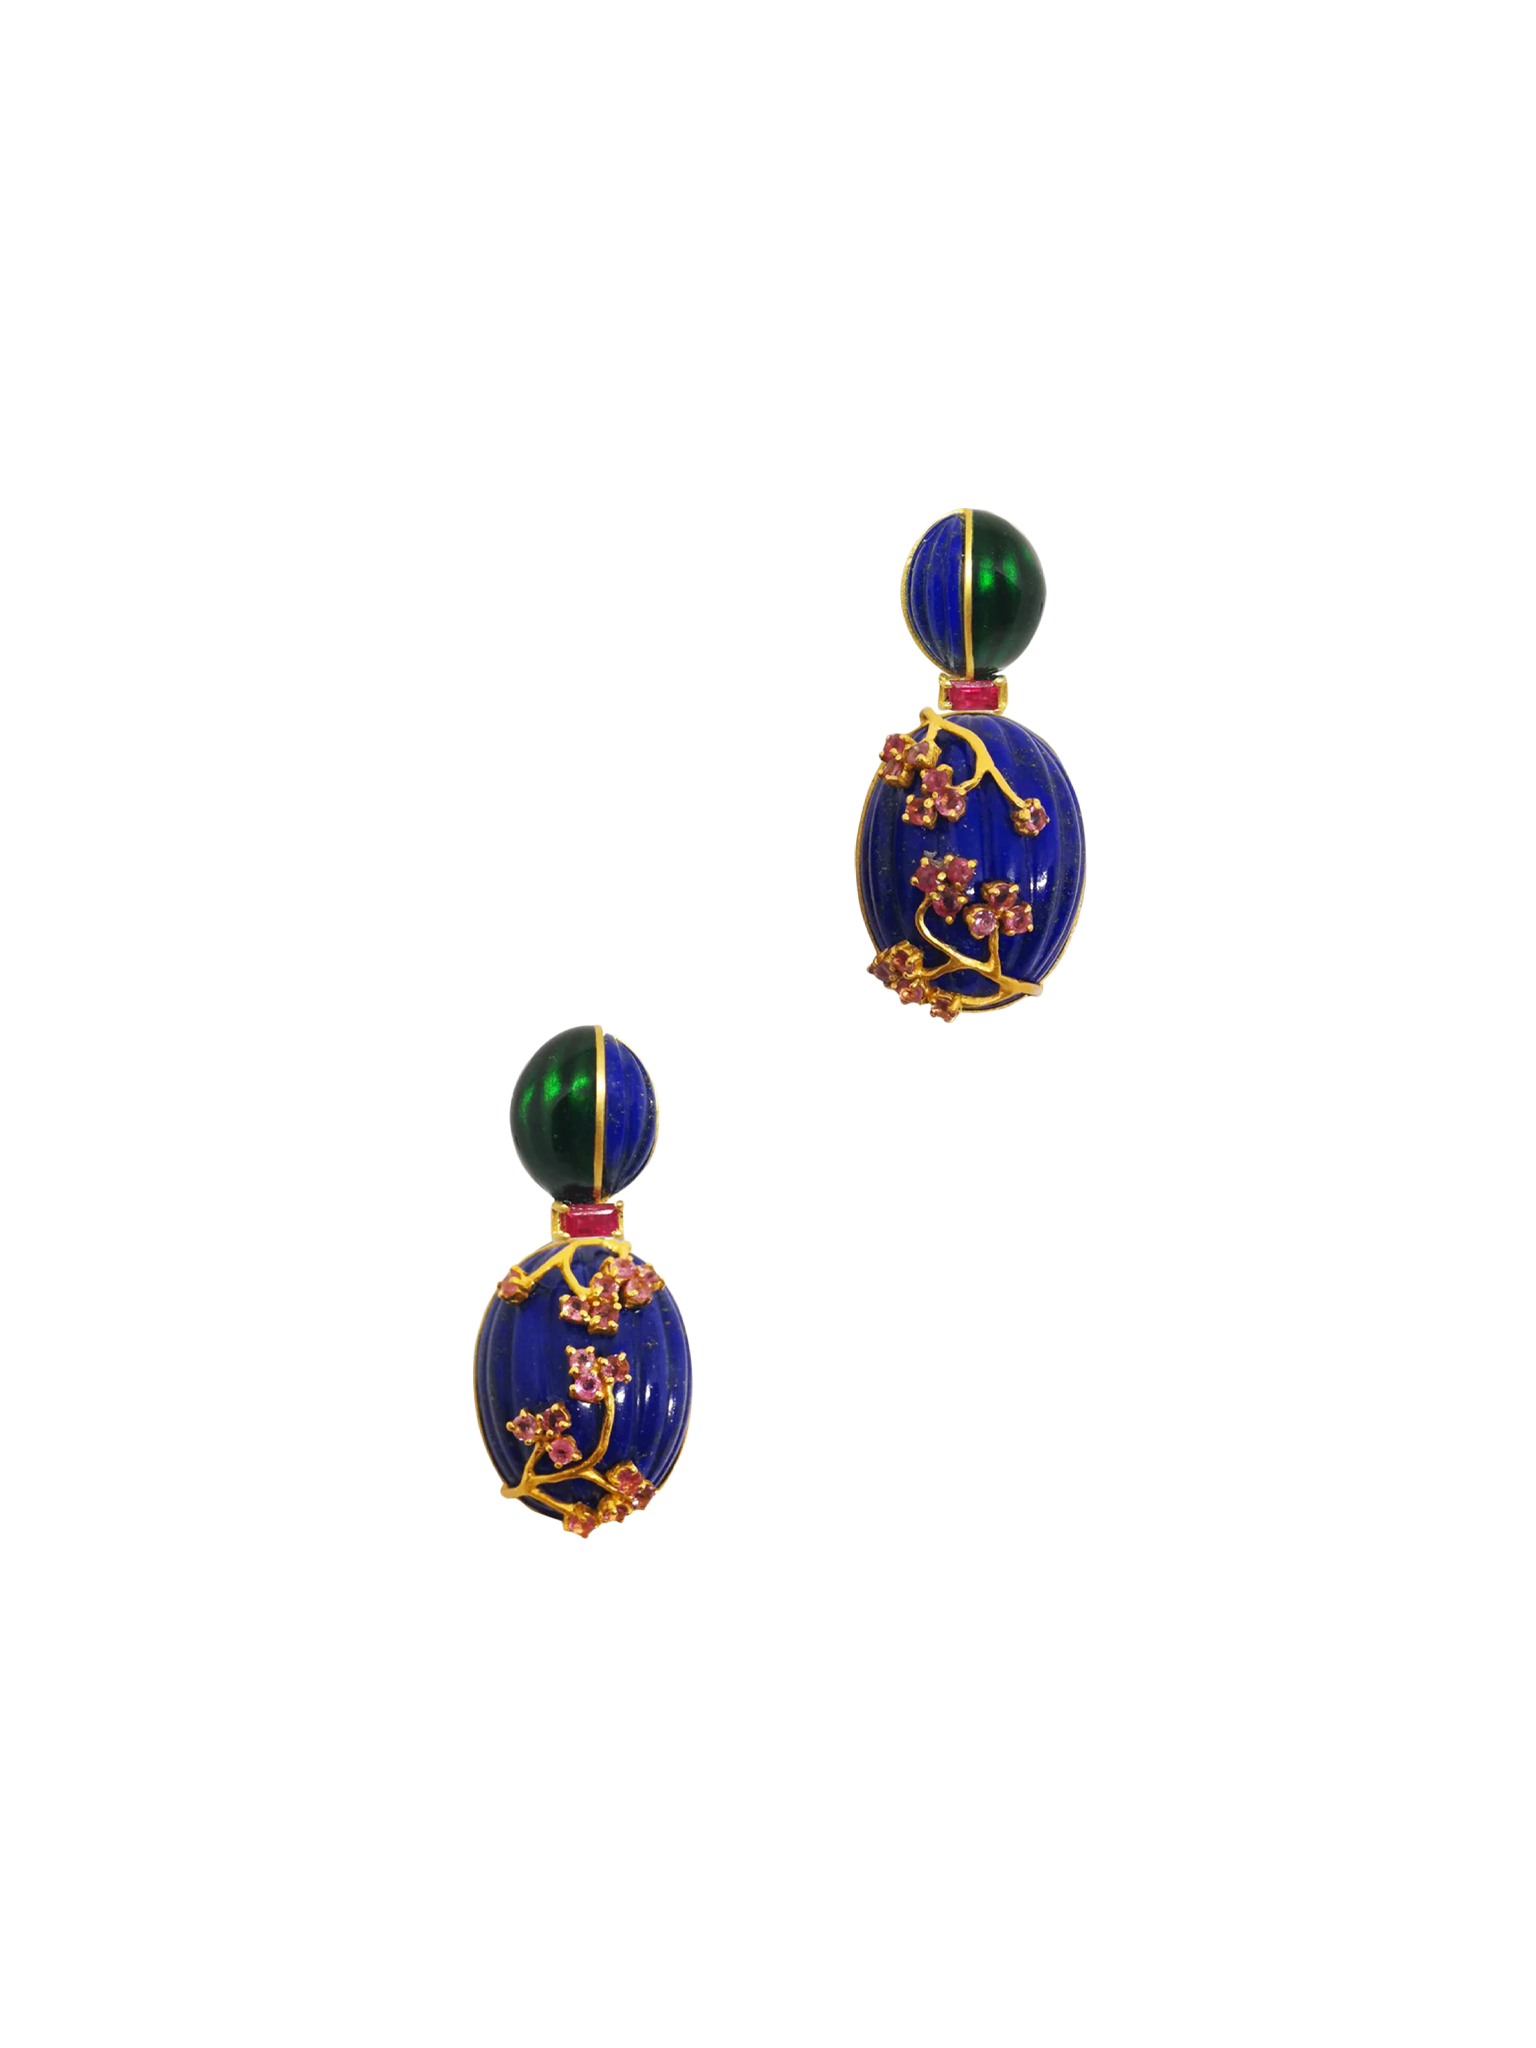 Malachite bougainvillea earrings